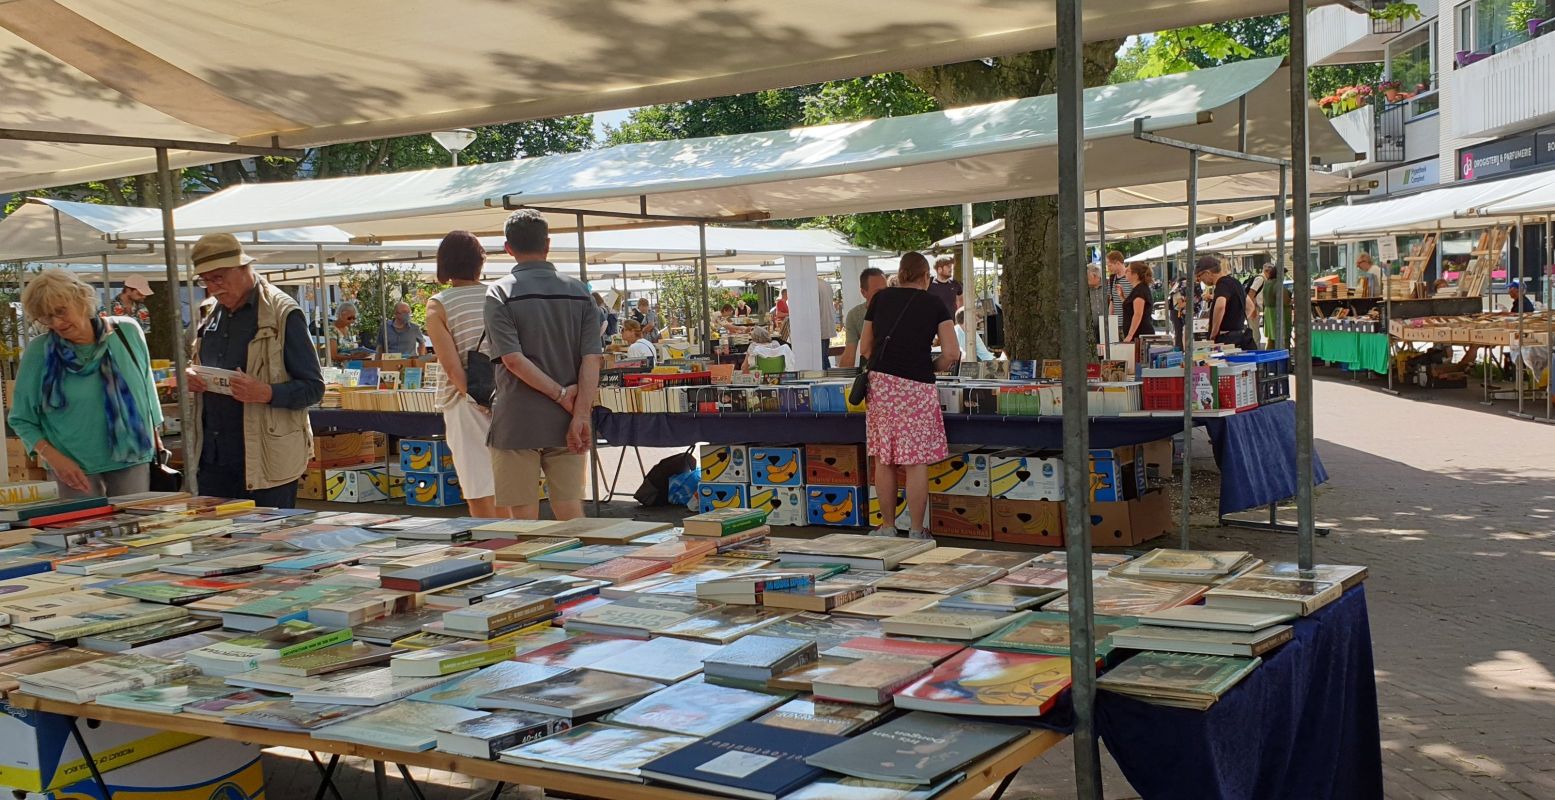 De Delftse boekenmarkt oogt op het eerste gezicht klein, maar biedt wel een uitgebreide selectie aan boeken. Foto: Dorry Mulder